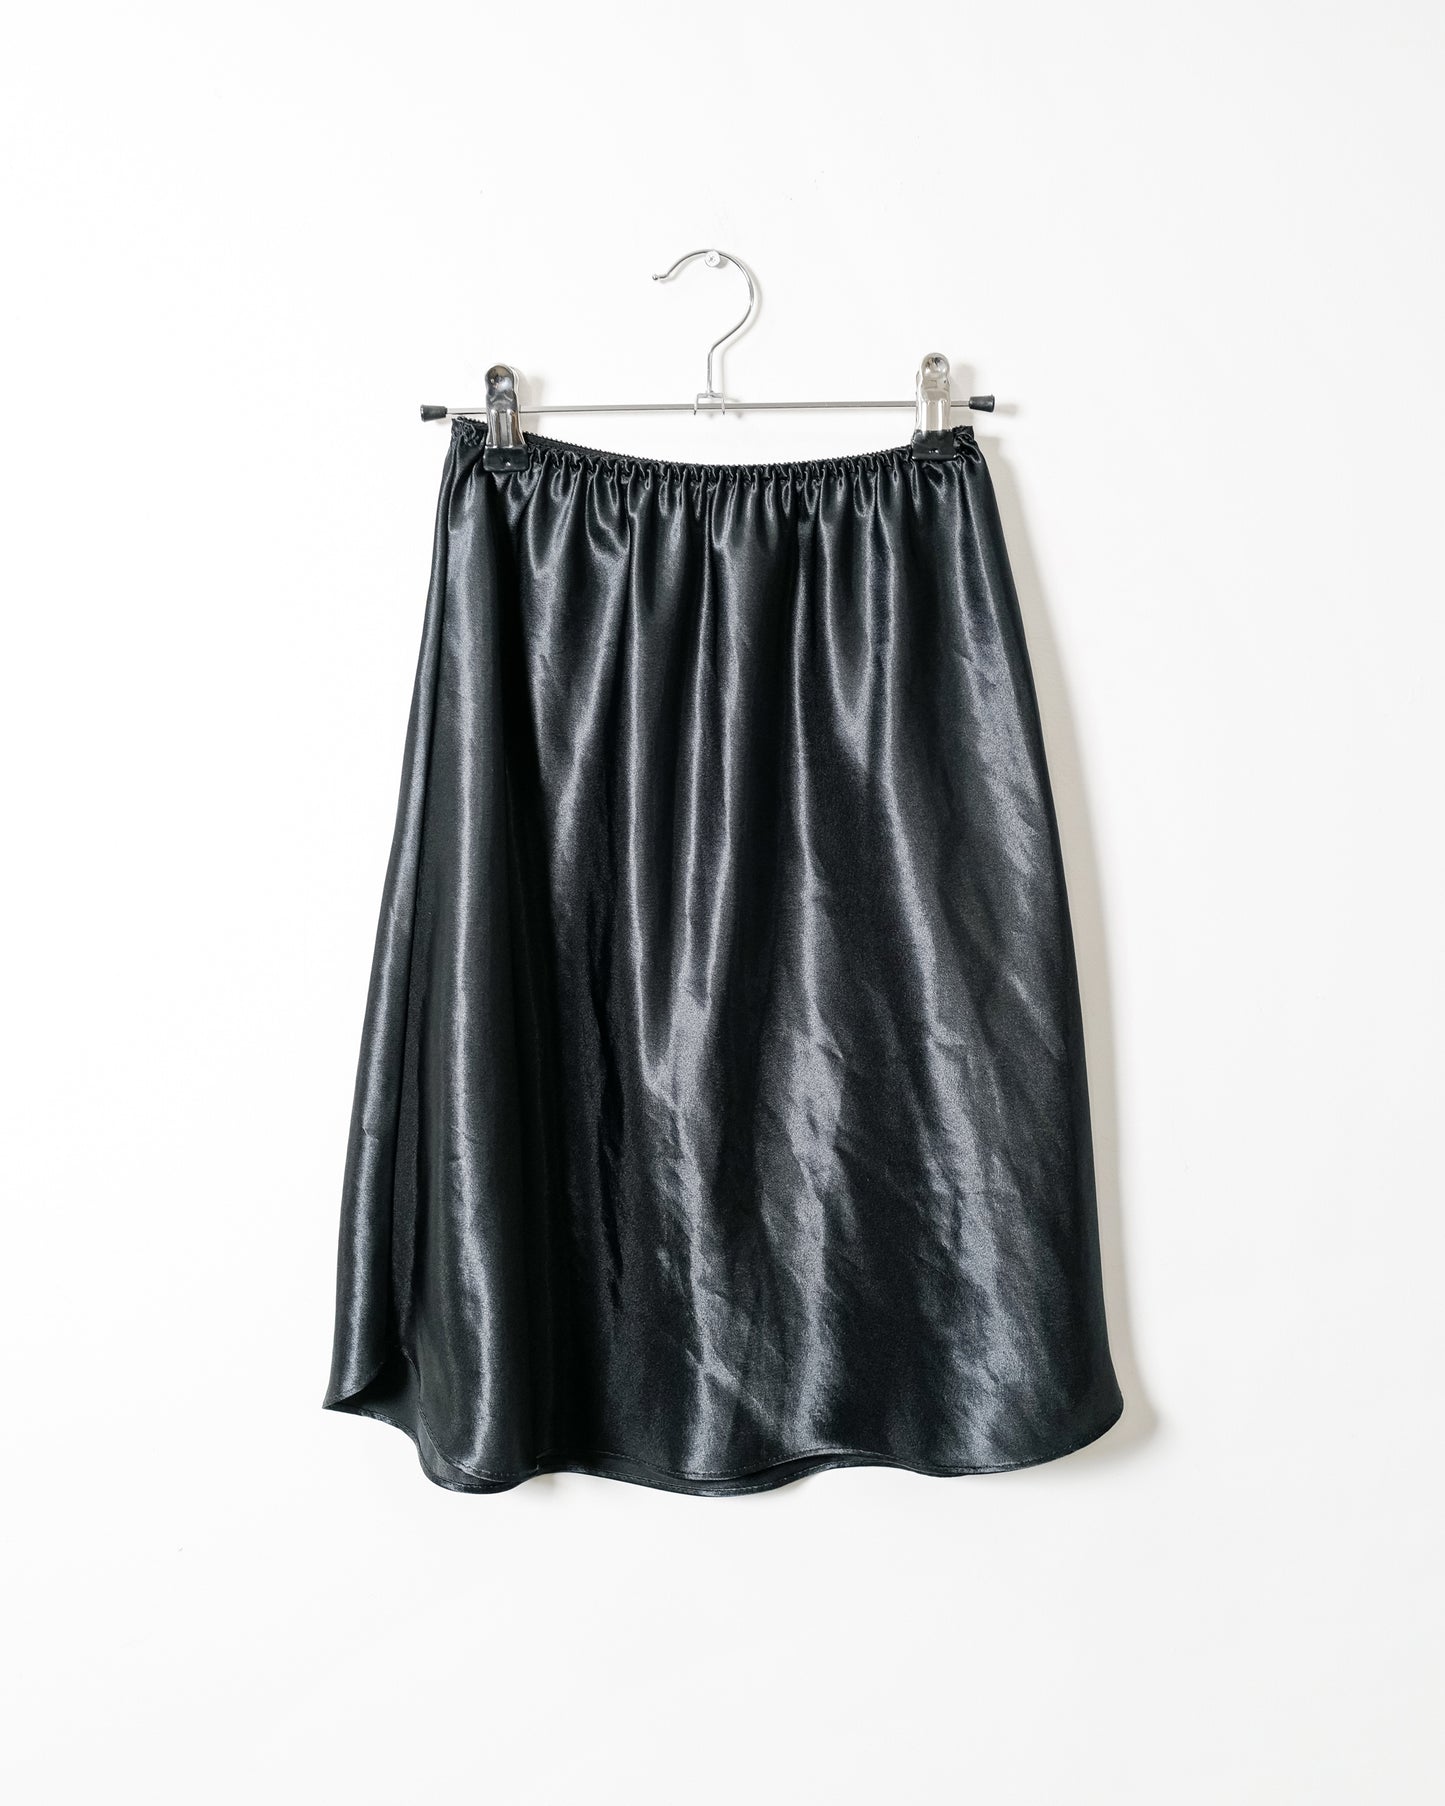 Vintage Slip Skirt - Size Small